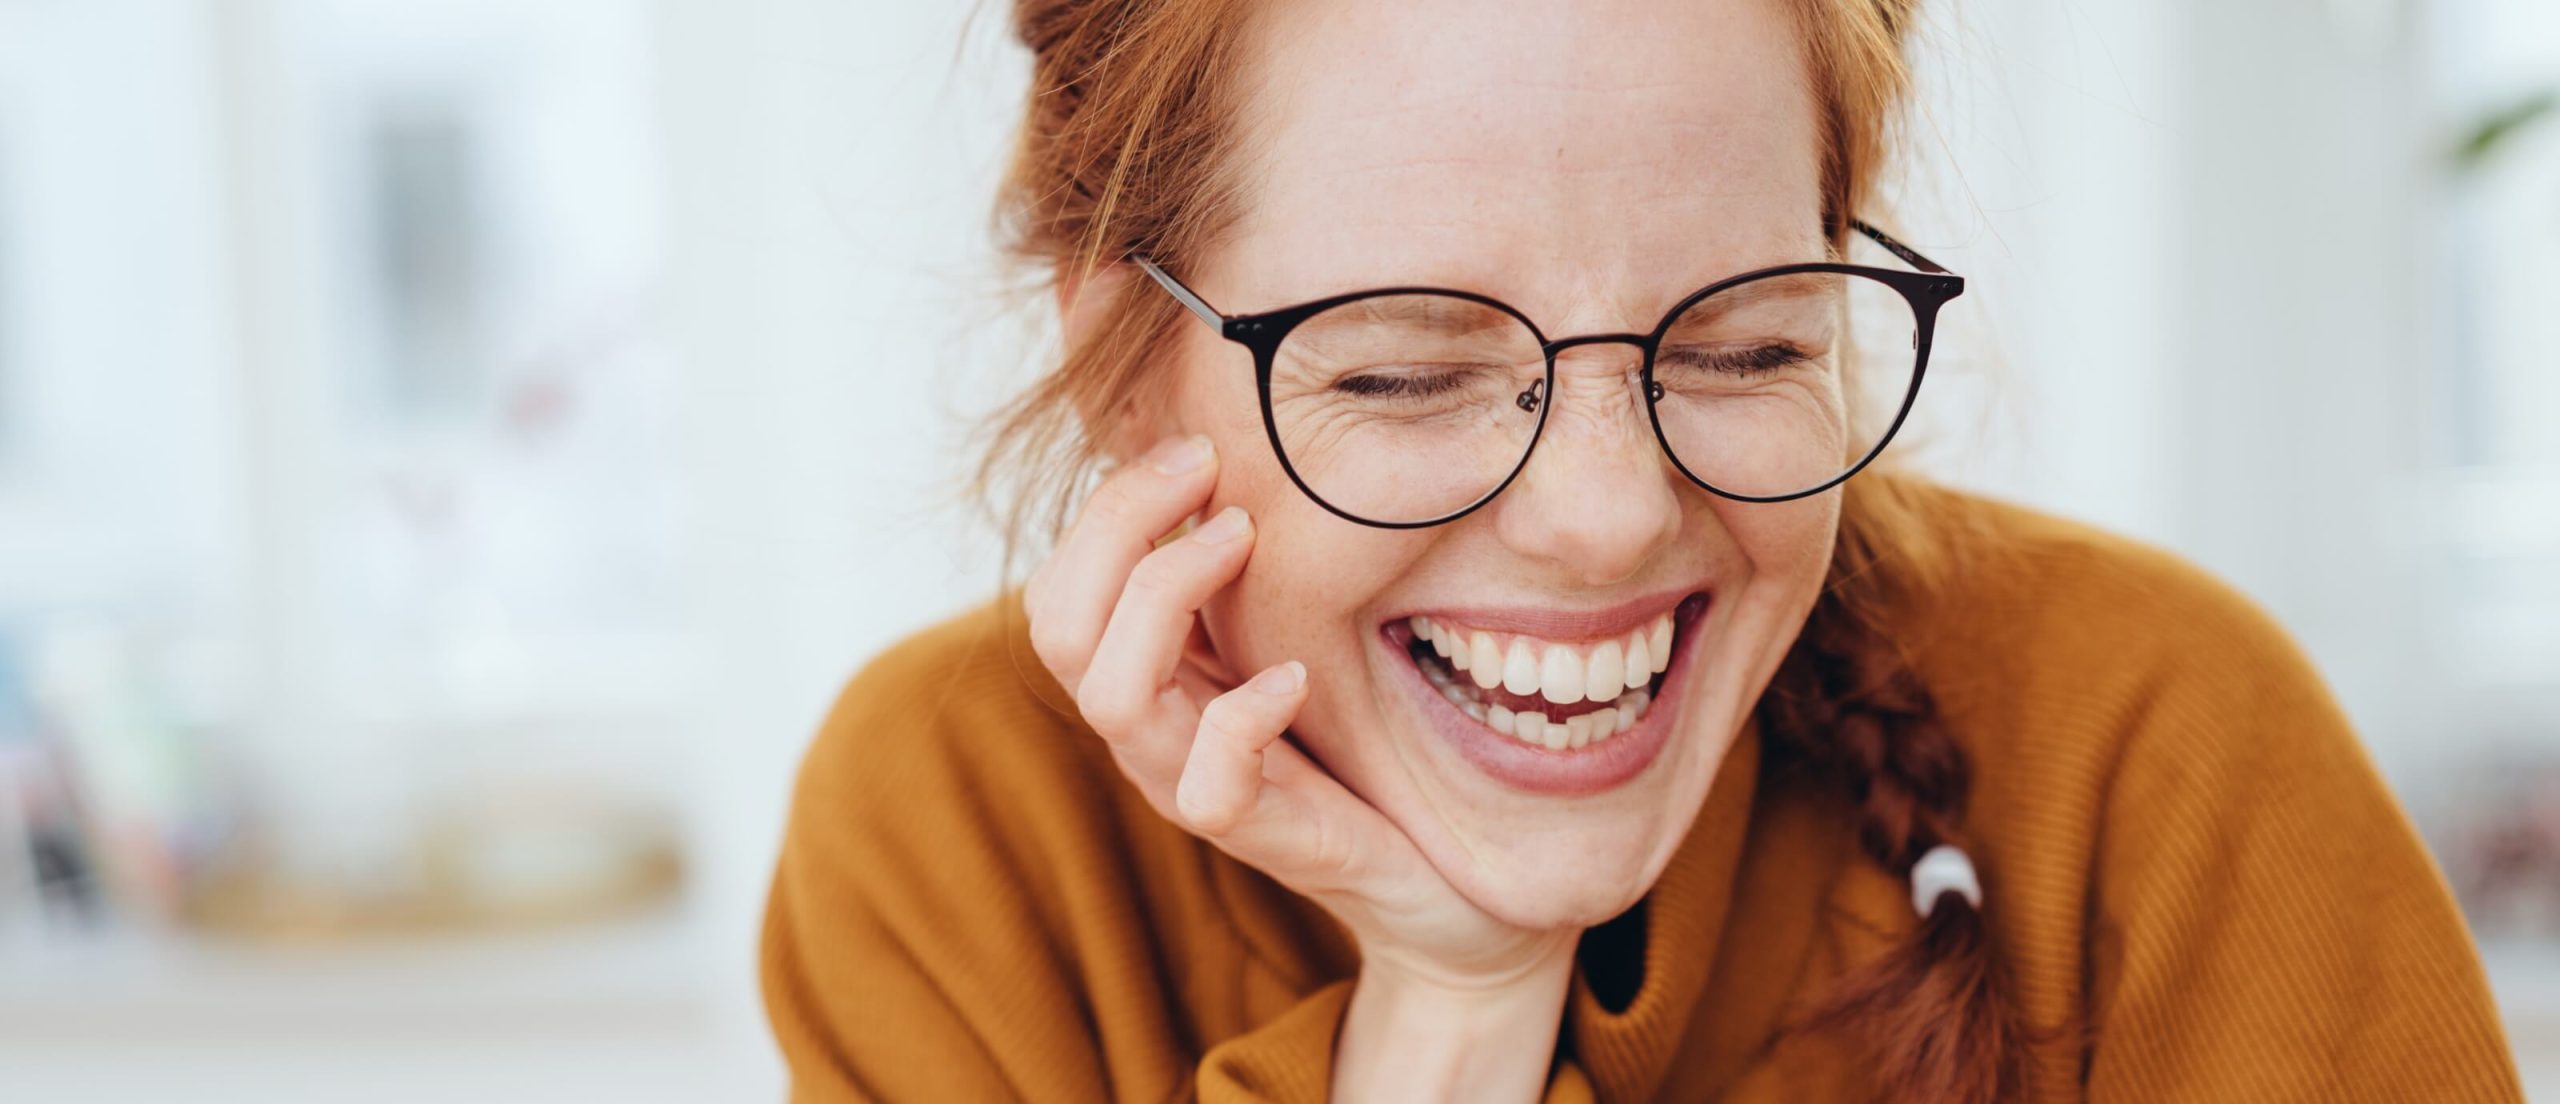 Lachende Frau mit schwarzer Brille